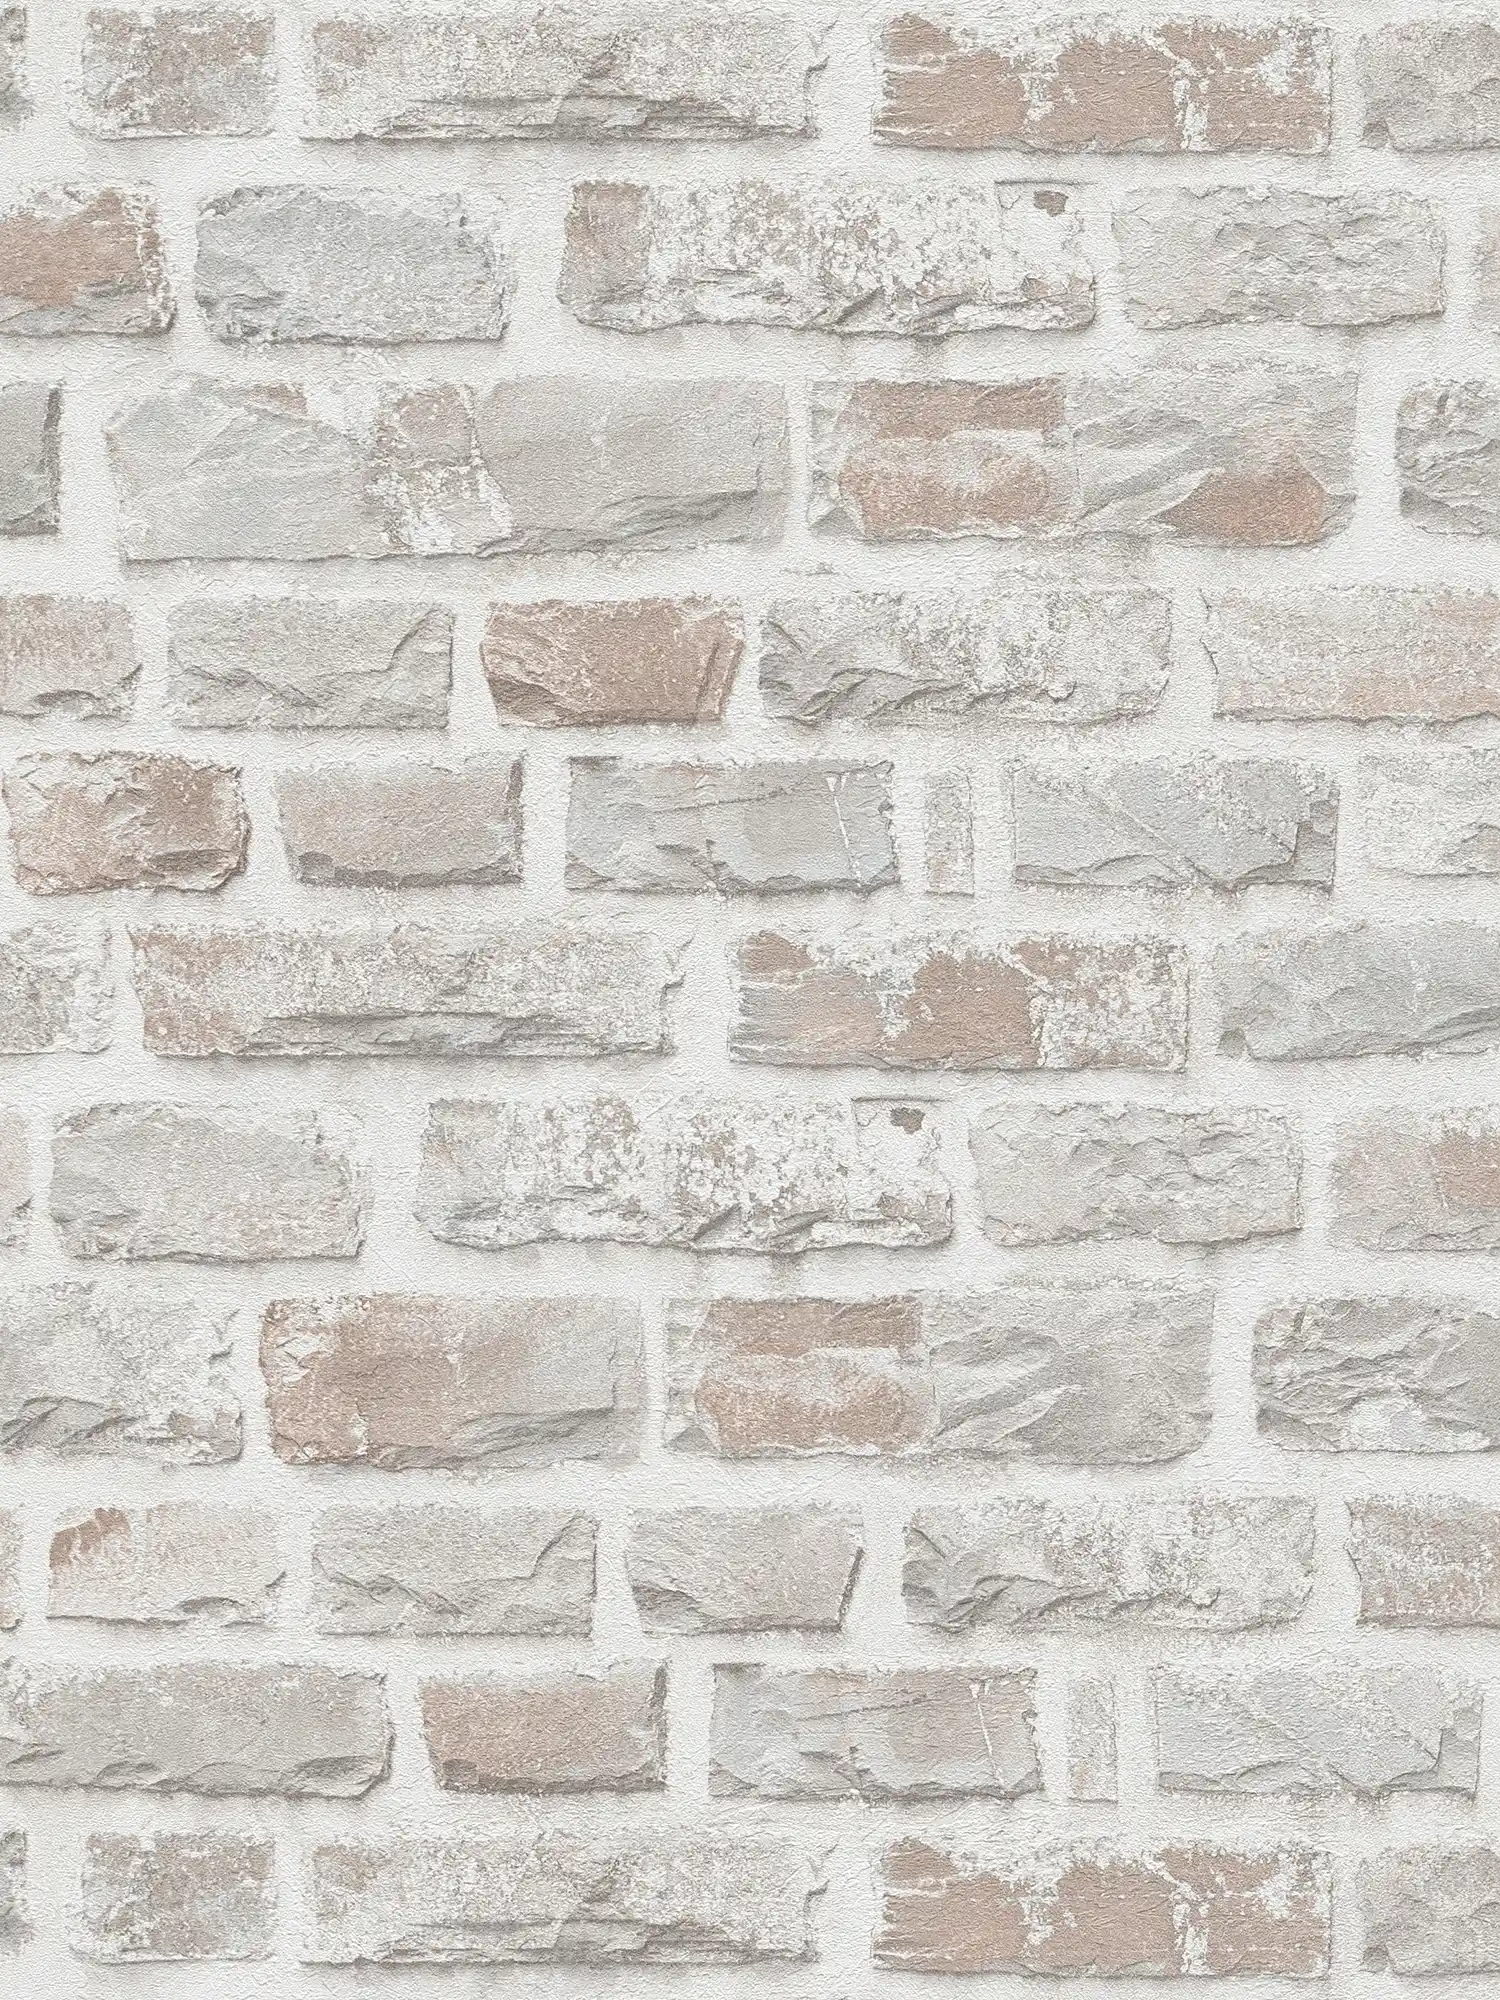         Vliestapete mit Natursteinmauer PVC-frei – Grau, Weiß
    